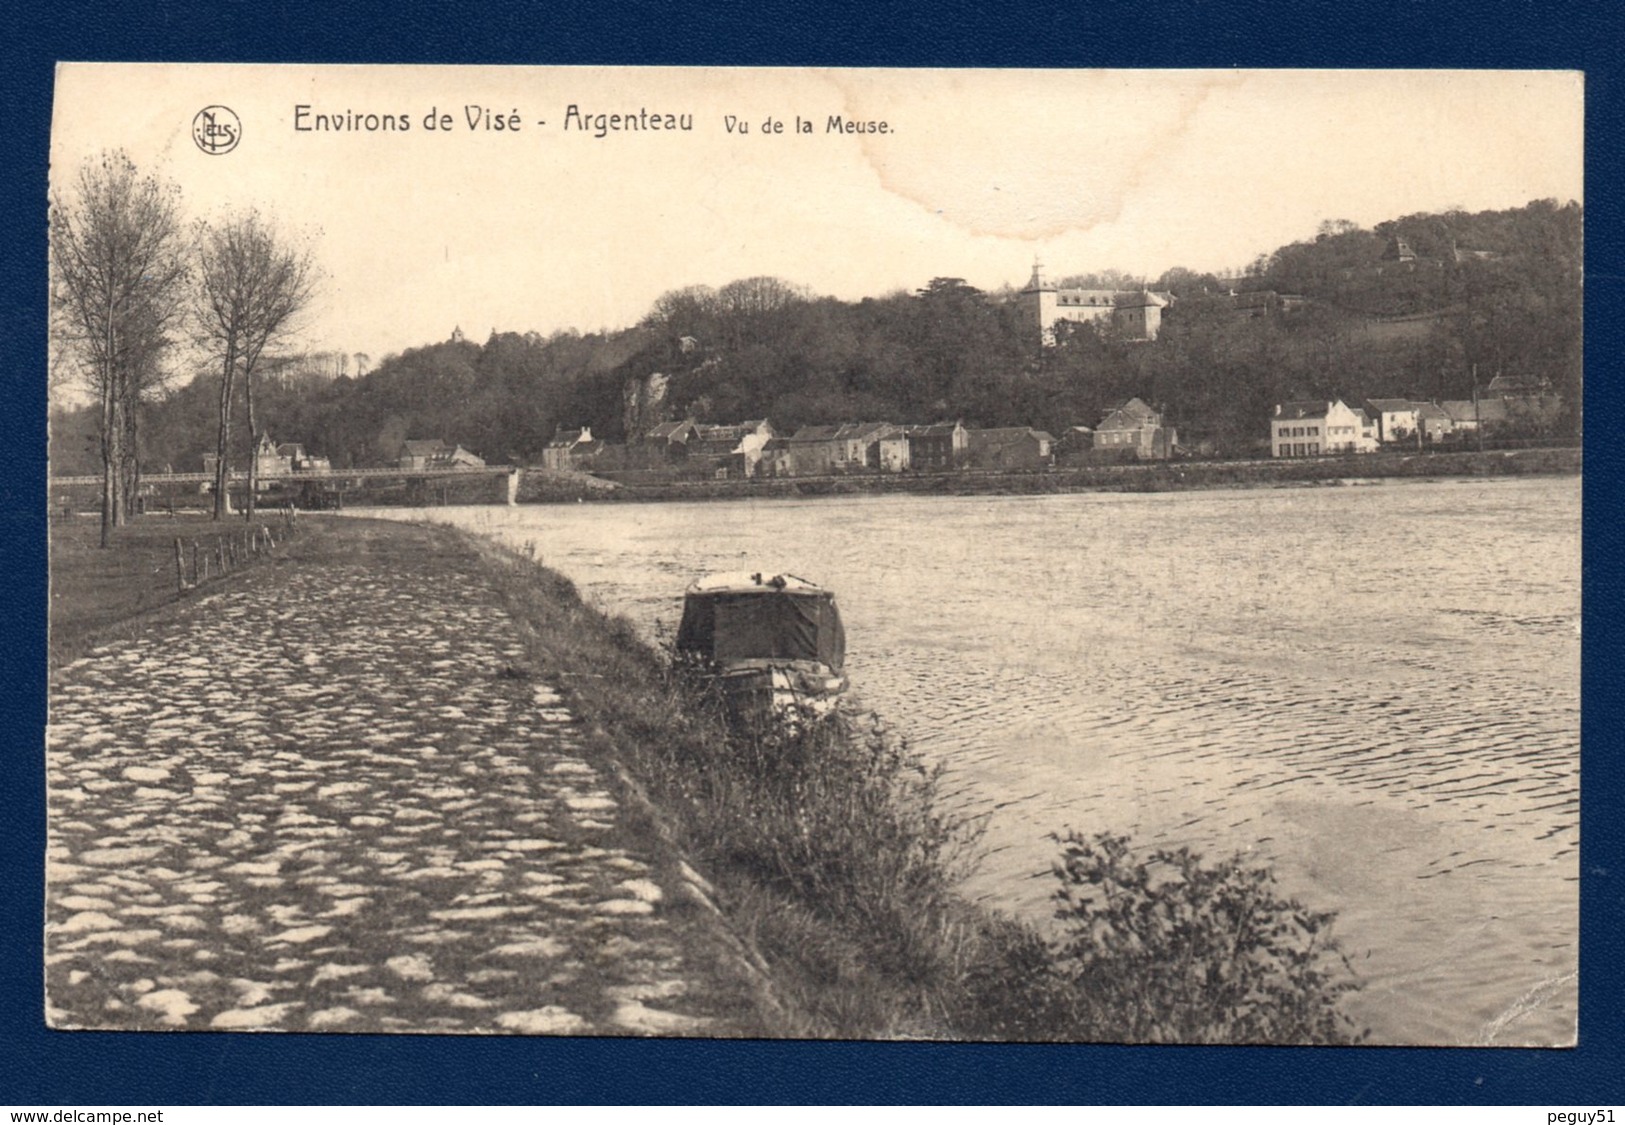 Environs De Visé (Liège). Argenteau Vu De La Meuse. 1925 - Visé